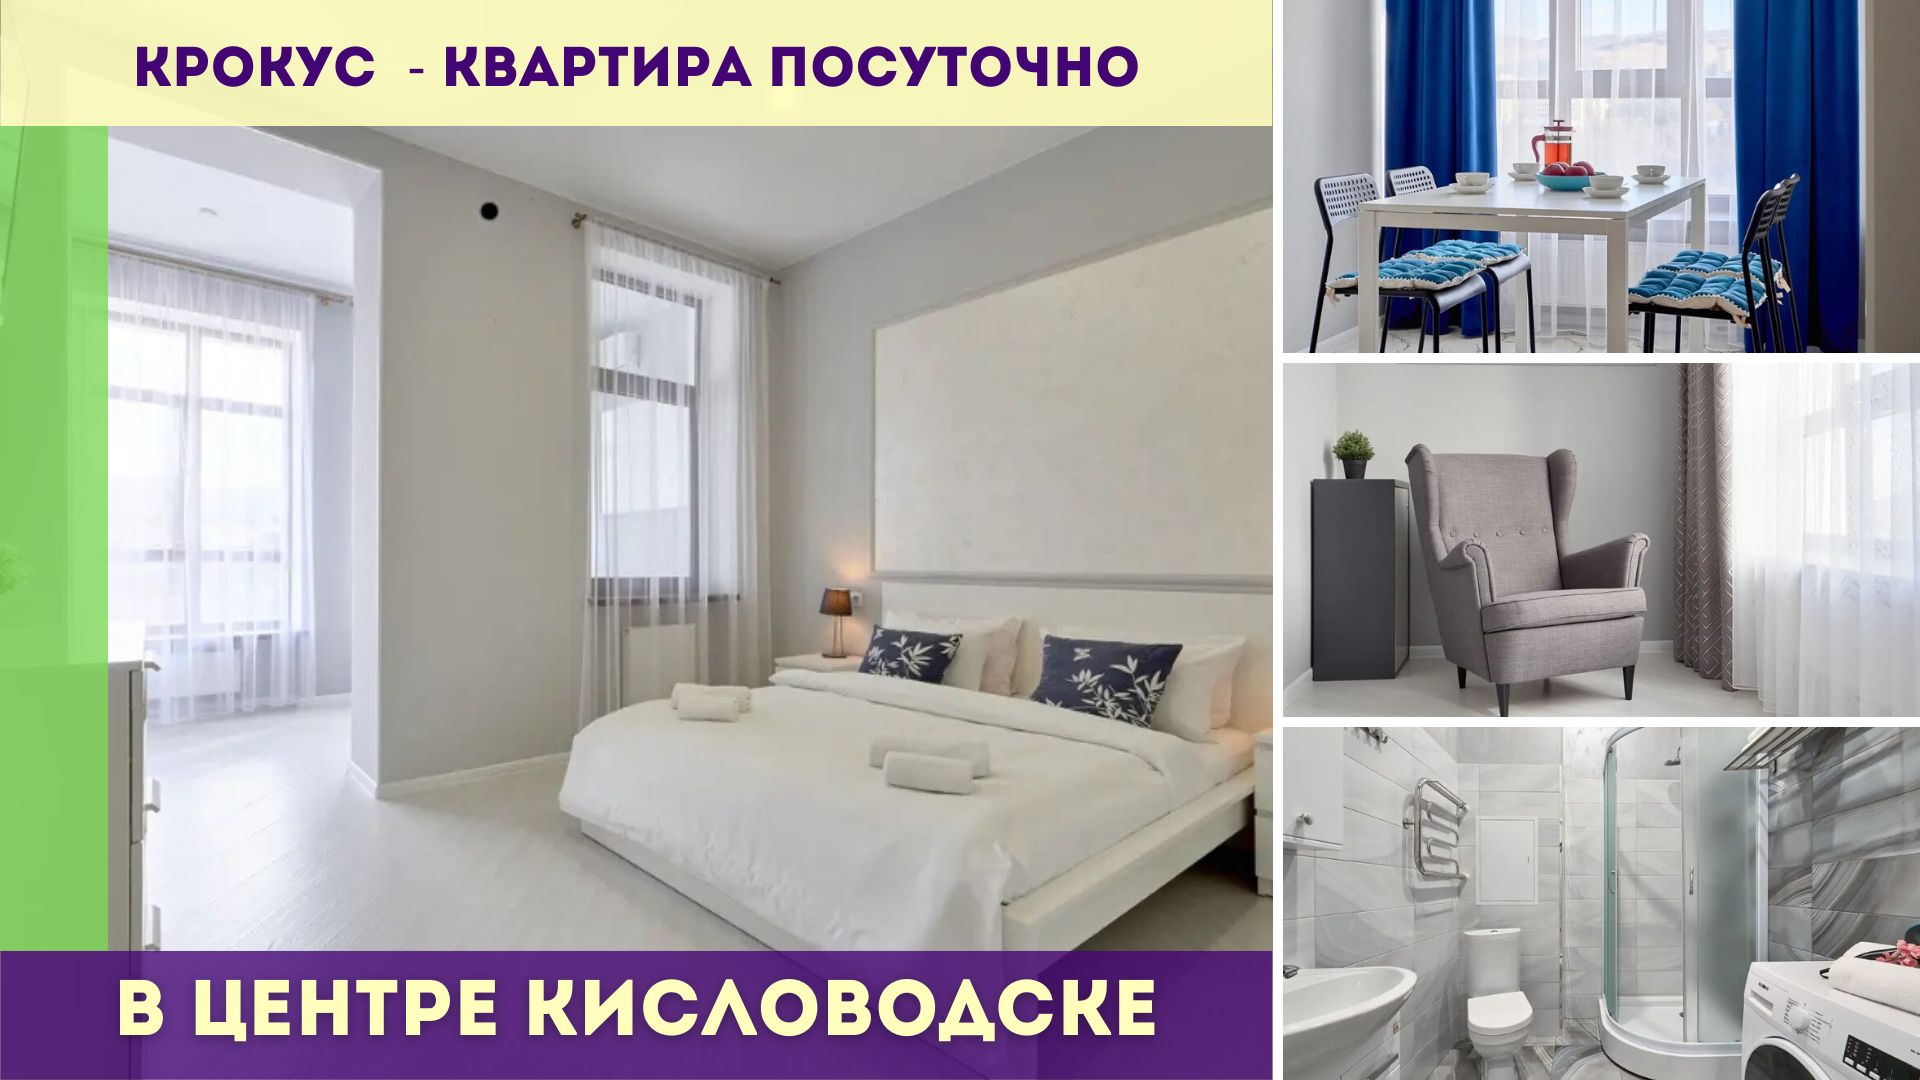 Крокус - квартира посуточно в самом центре Кисловодска